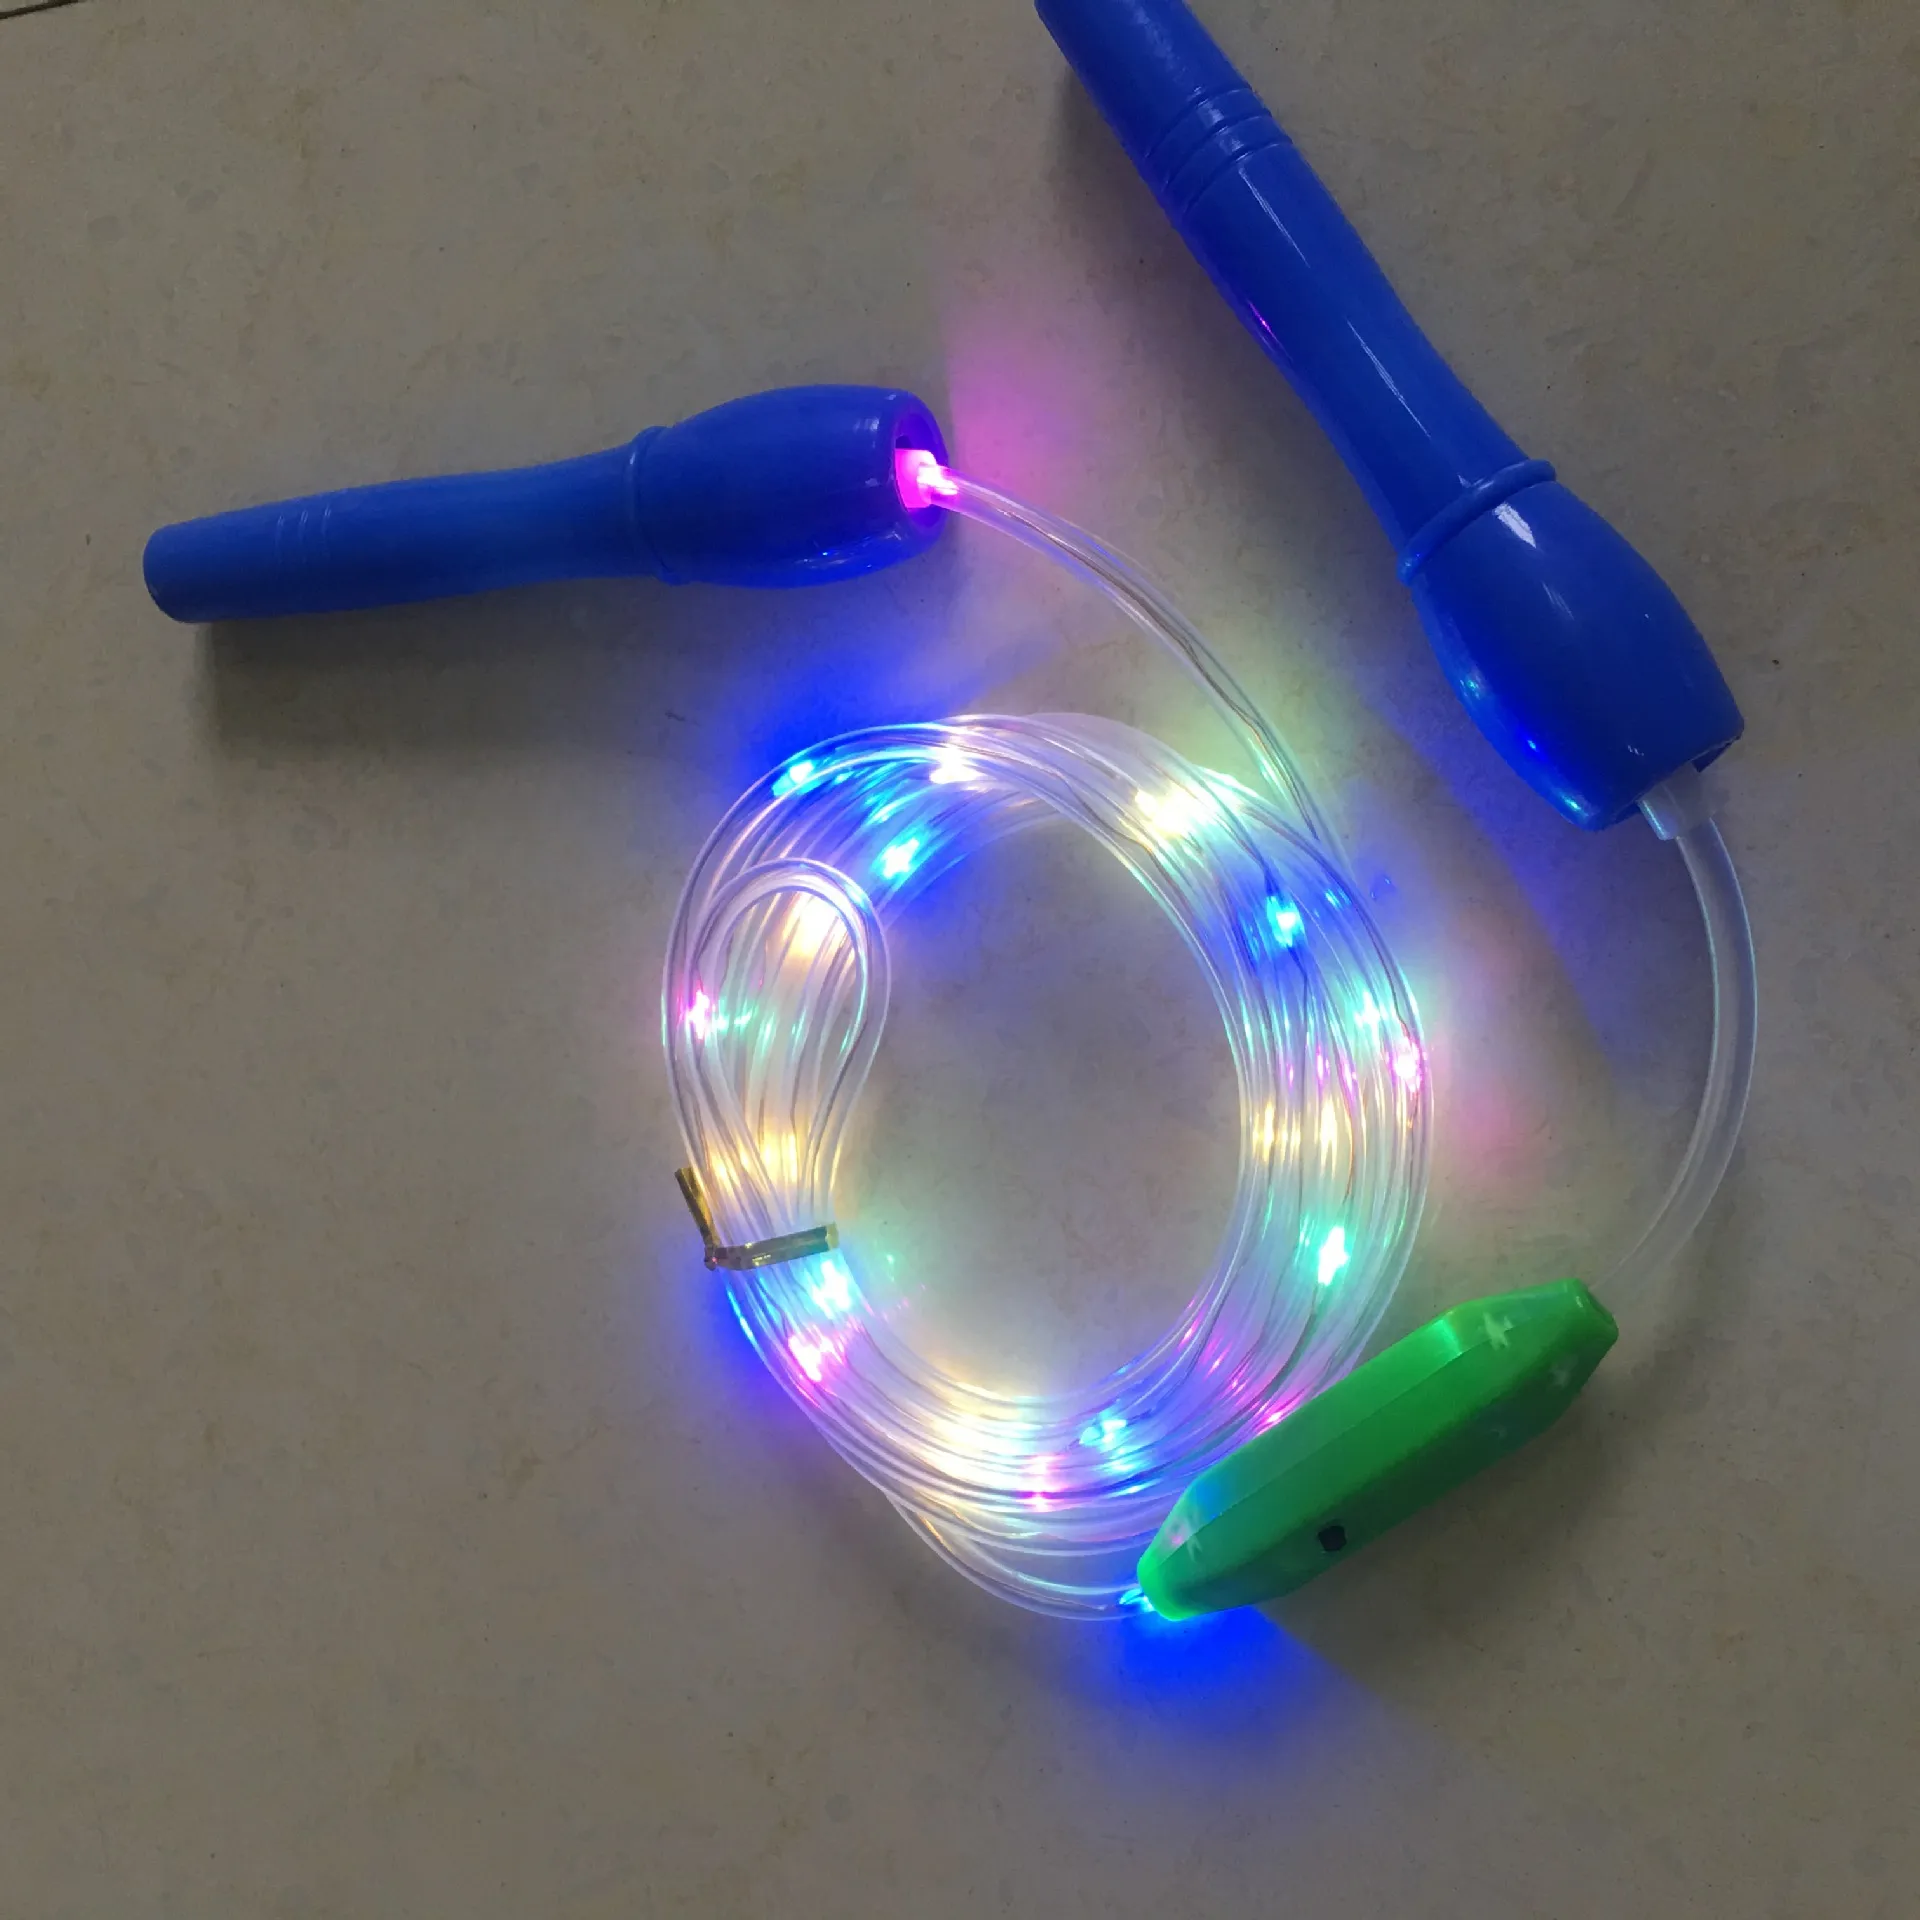 Corde à Sauter LED pour Enfants - Corde à Sauter LED